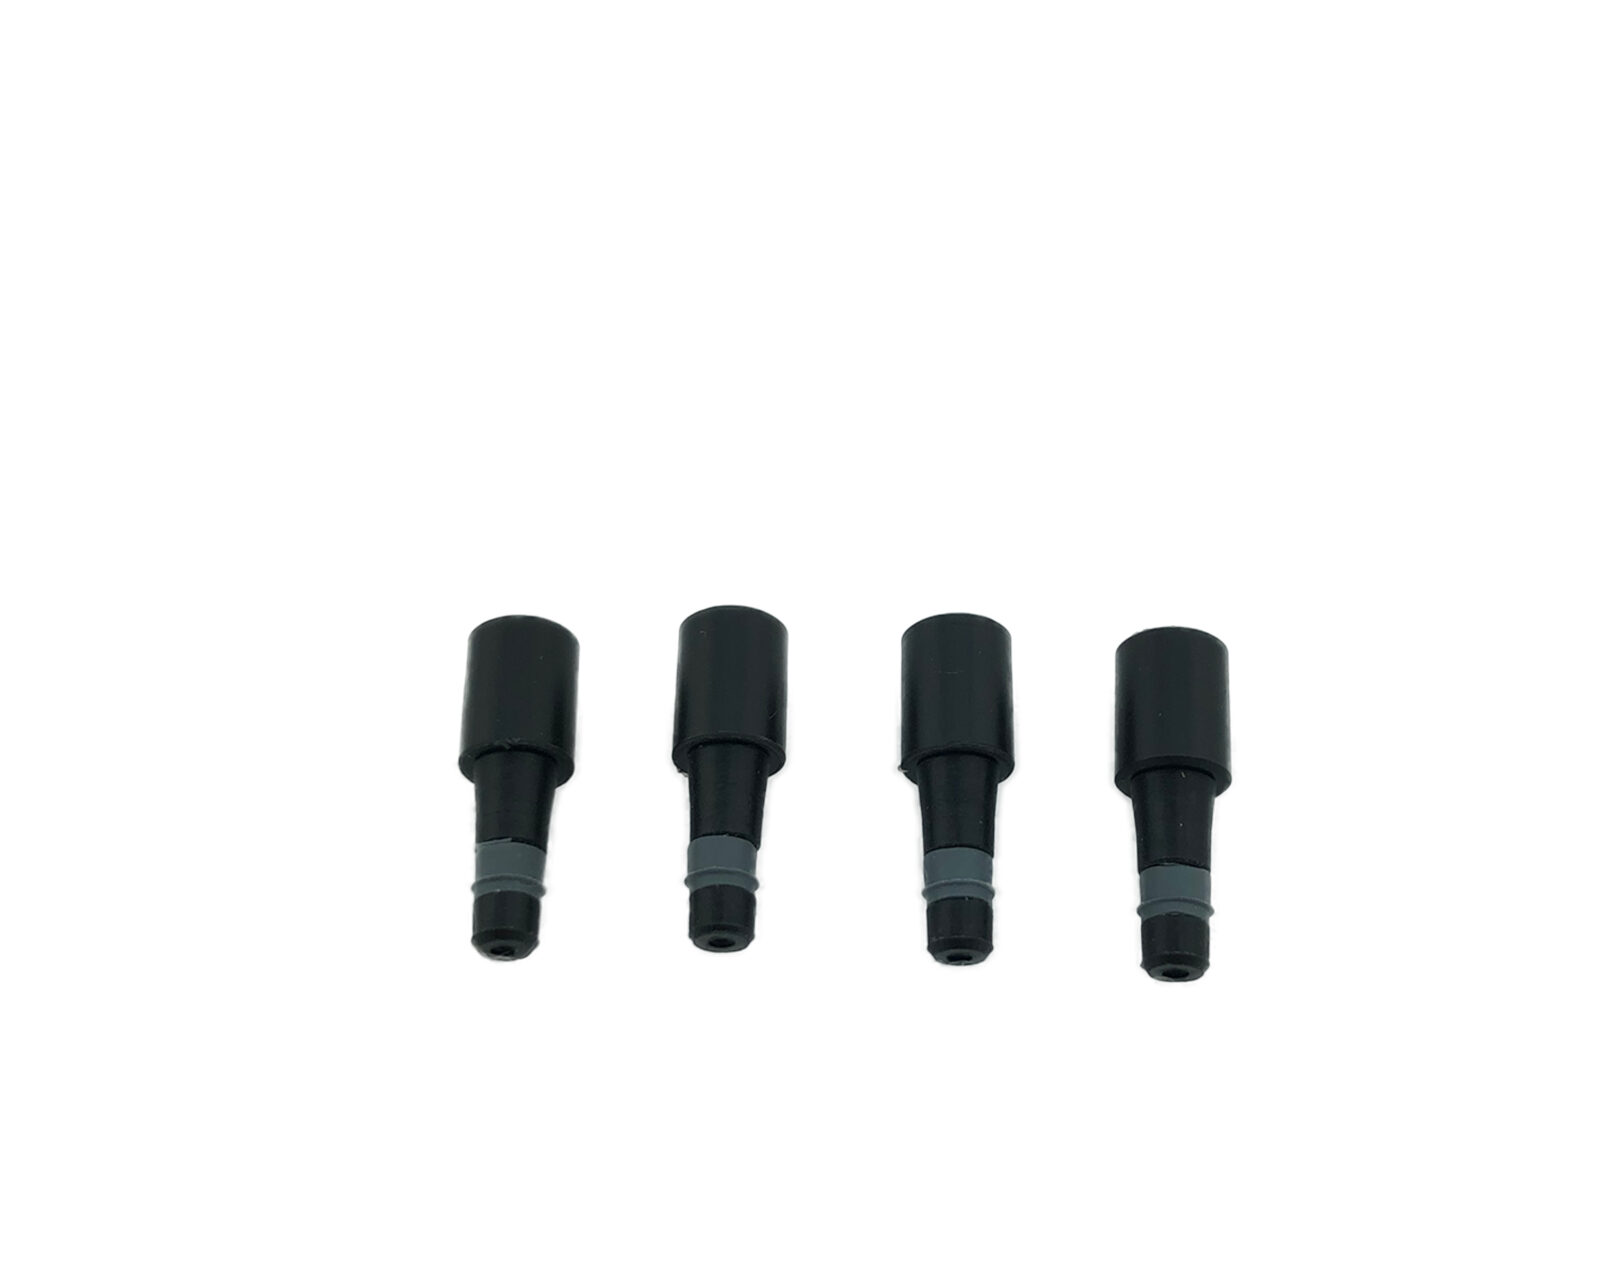 Nozzles for Ovation E8 & E12 multichannel 0.5-20µL